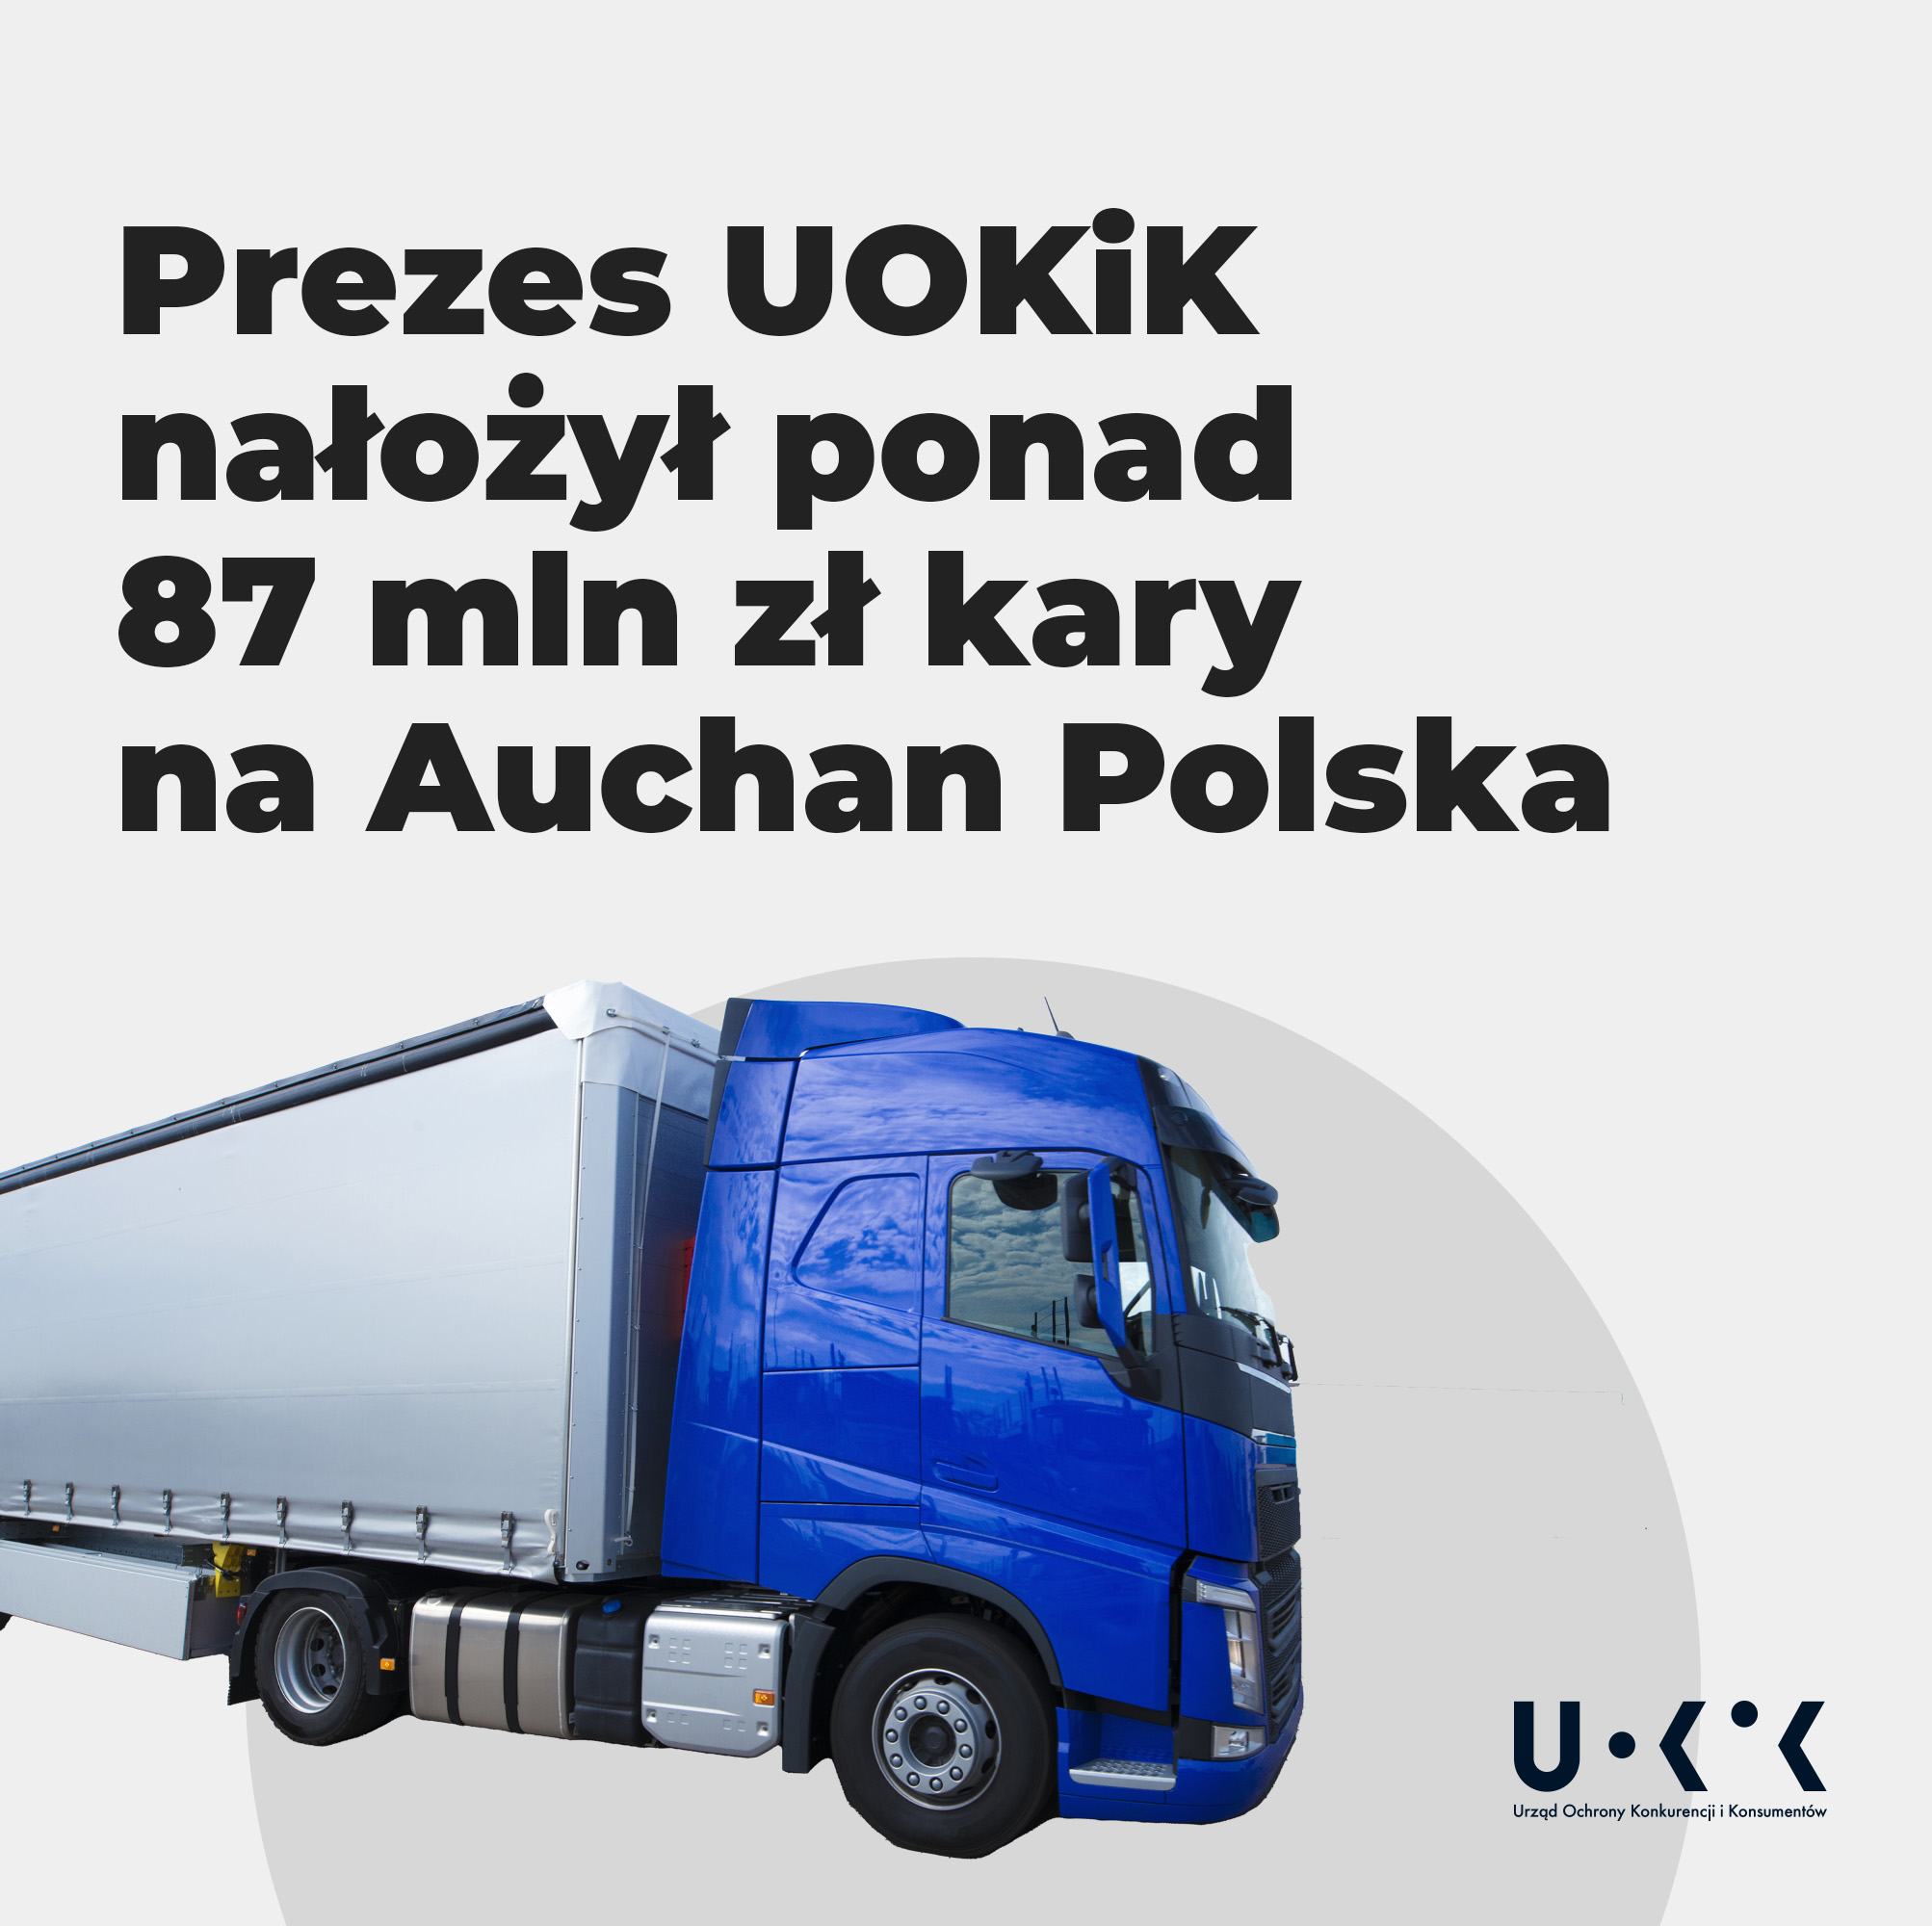 Prezes UOKiK nałożył ponad 87 mln zł kary na Auchan Polska